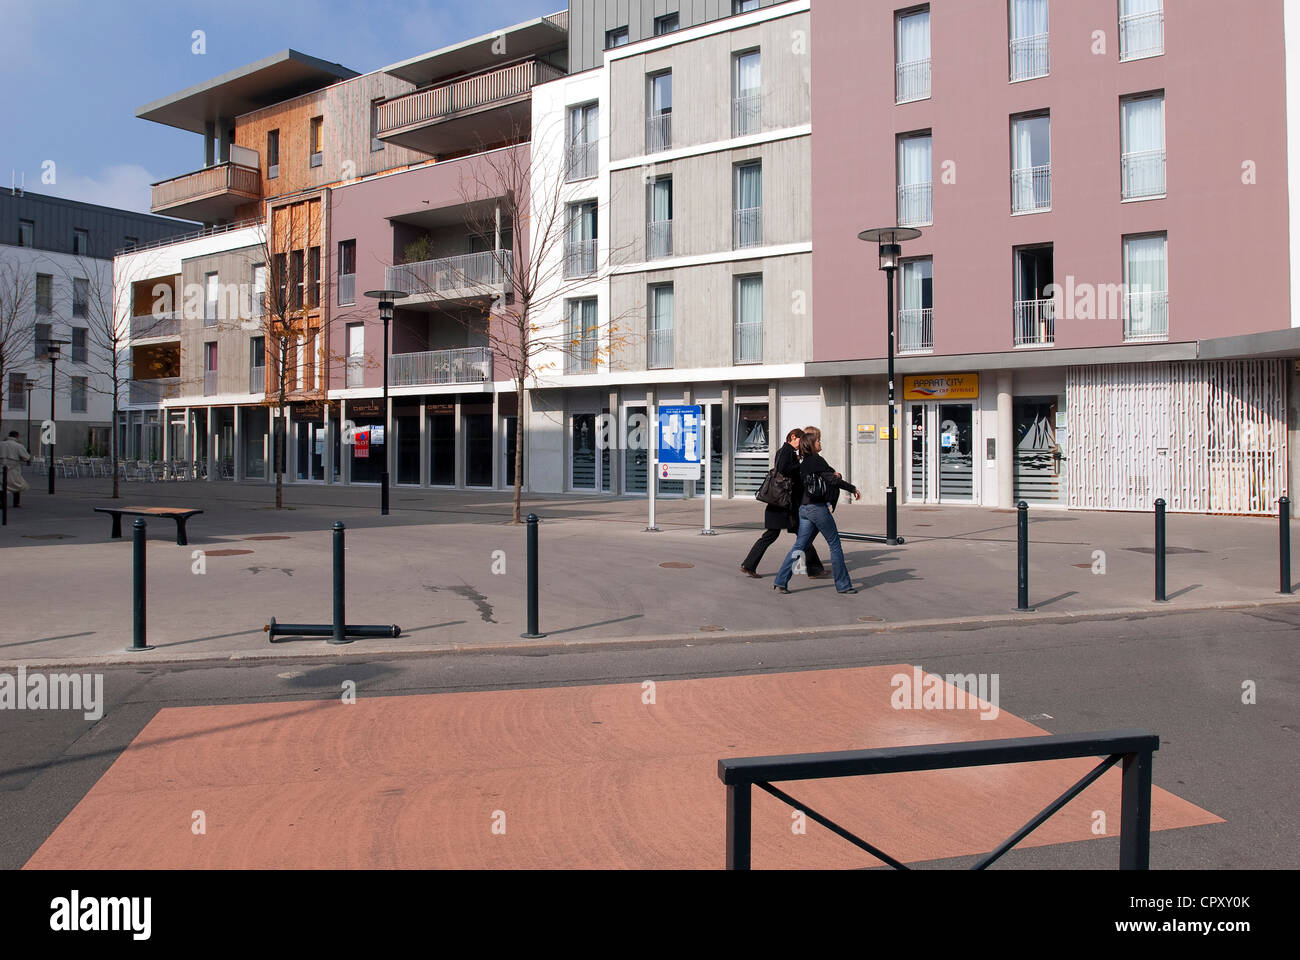 France, Loire Atlantique, Nantes, city planning Rue Foure Stock Photo